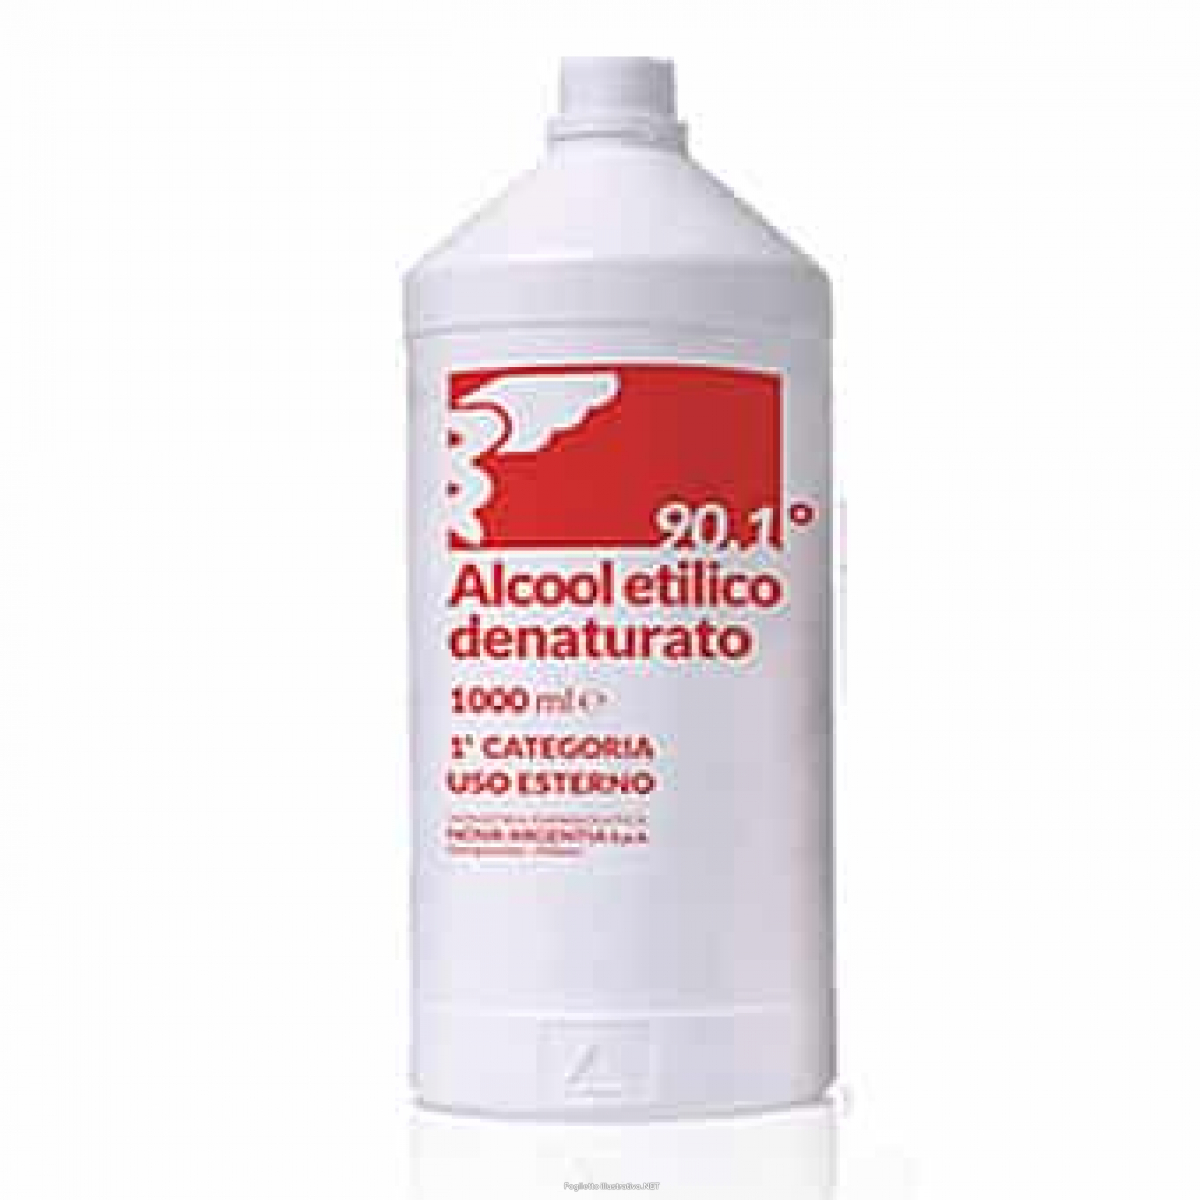 ALCOOL ETILICO DENATURATO 1 LT. - ALCOOLITAL